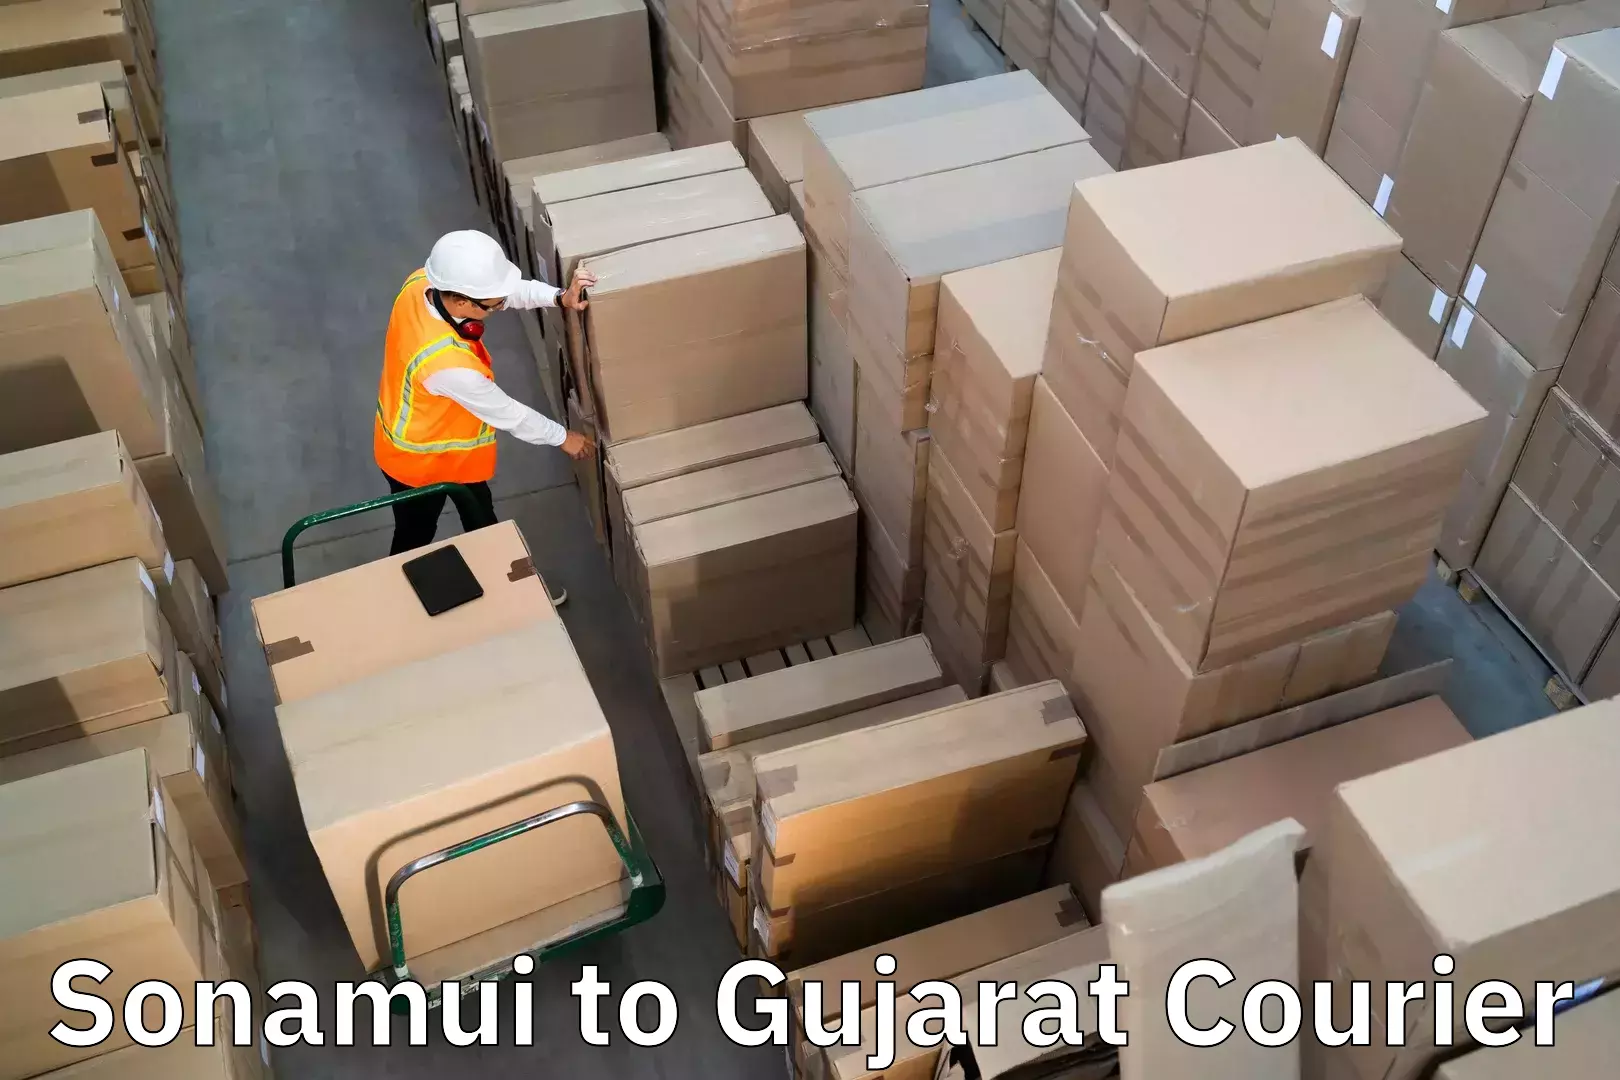 Baggage shipping experts Sonamui to Matar